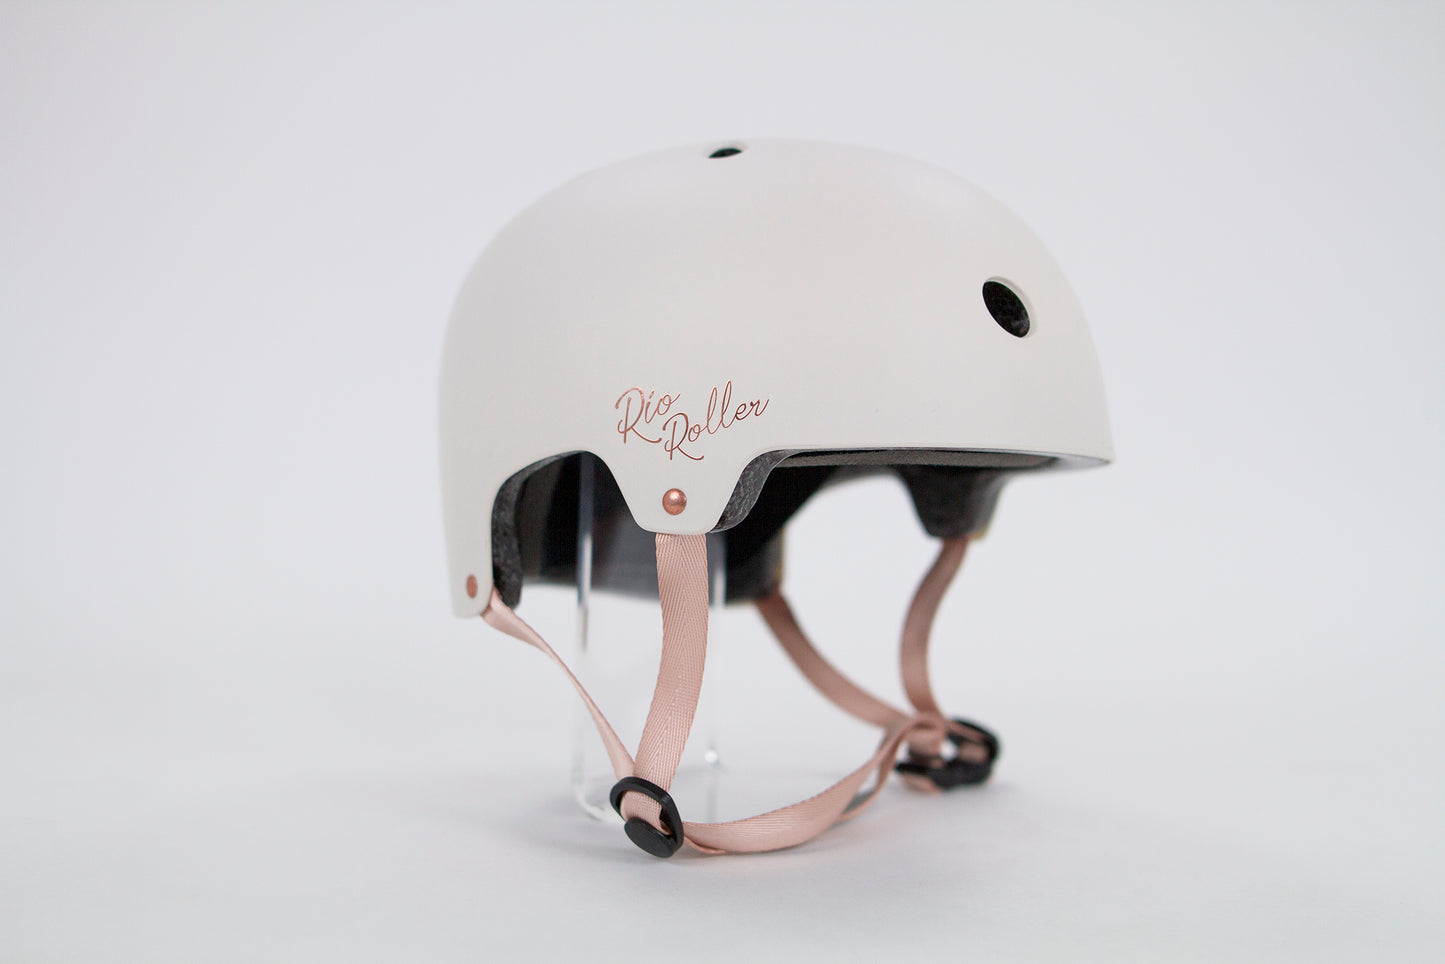 Rio Roller Rose Skate Helmet - Momma Trucker Skates